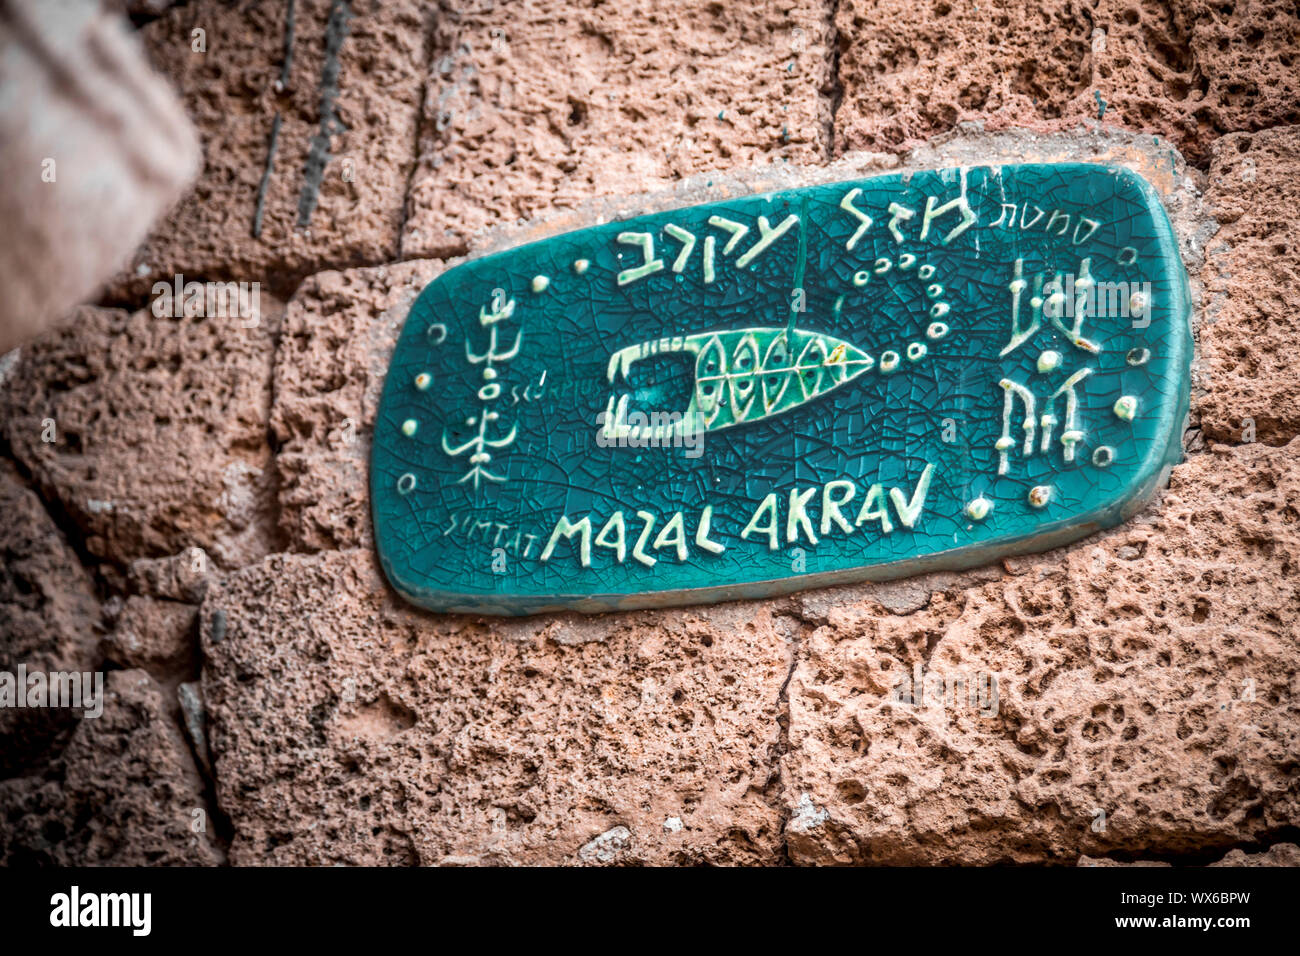 Un cartello stradale con oroscopo segni nella città vecchia di Jaffa, Israele, Mazal Akrav - Scorpione Foto Stock